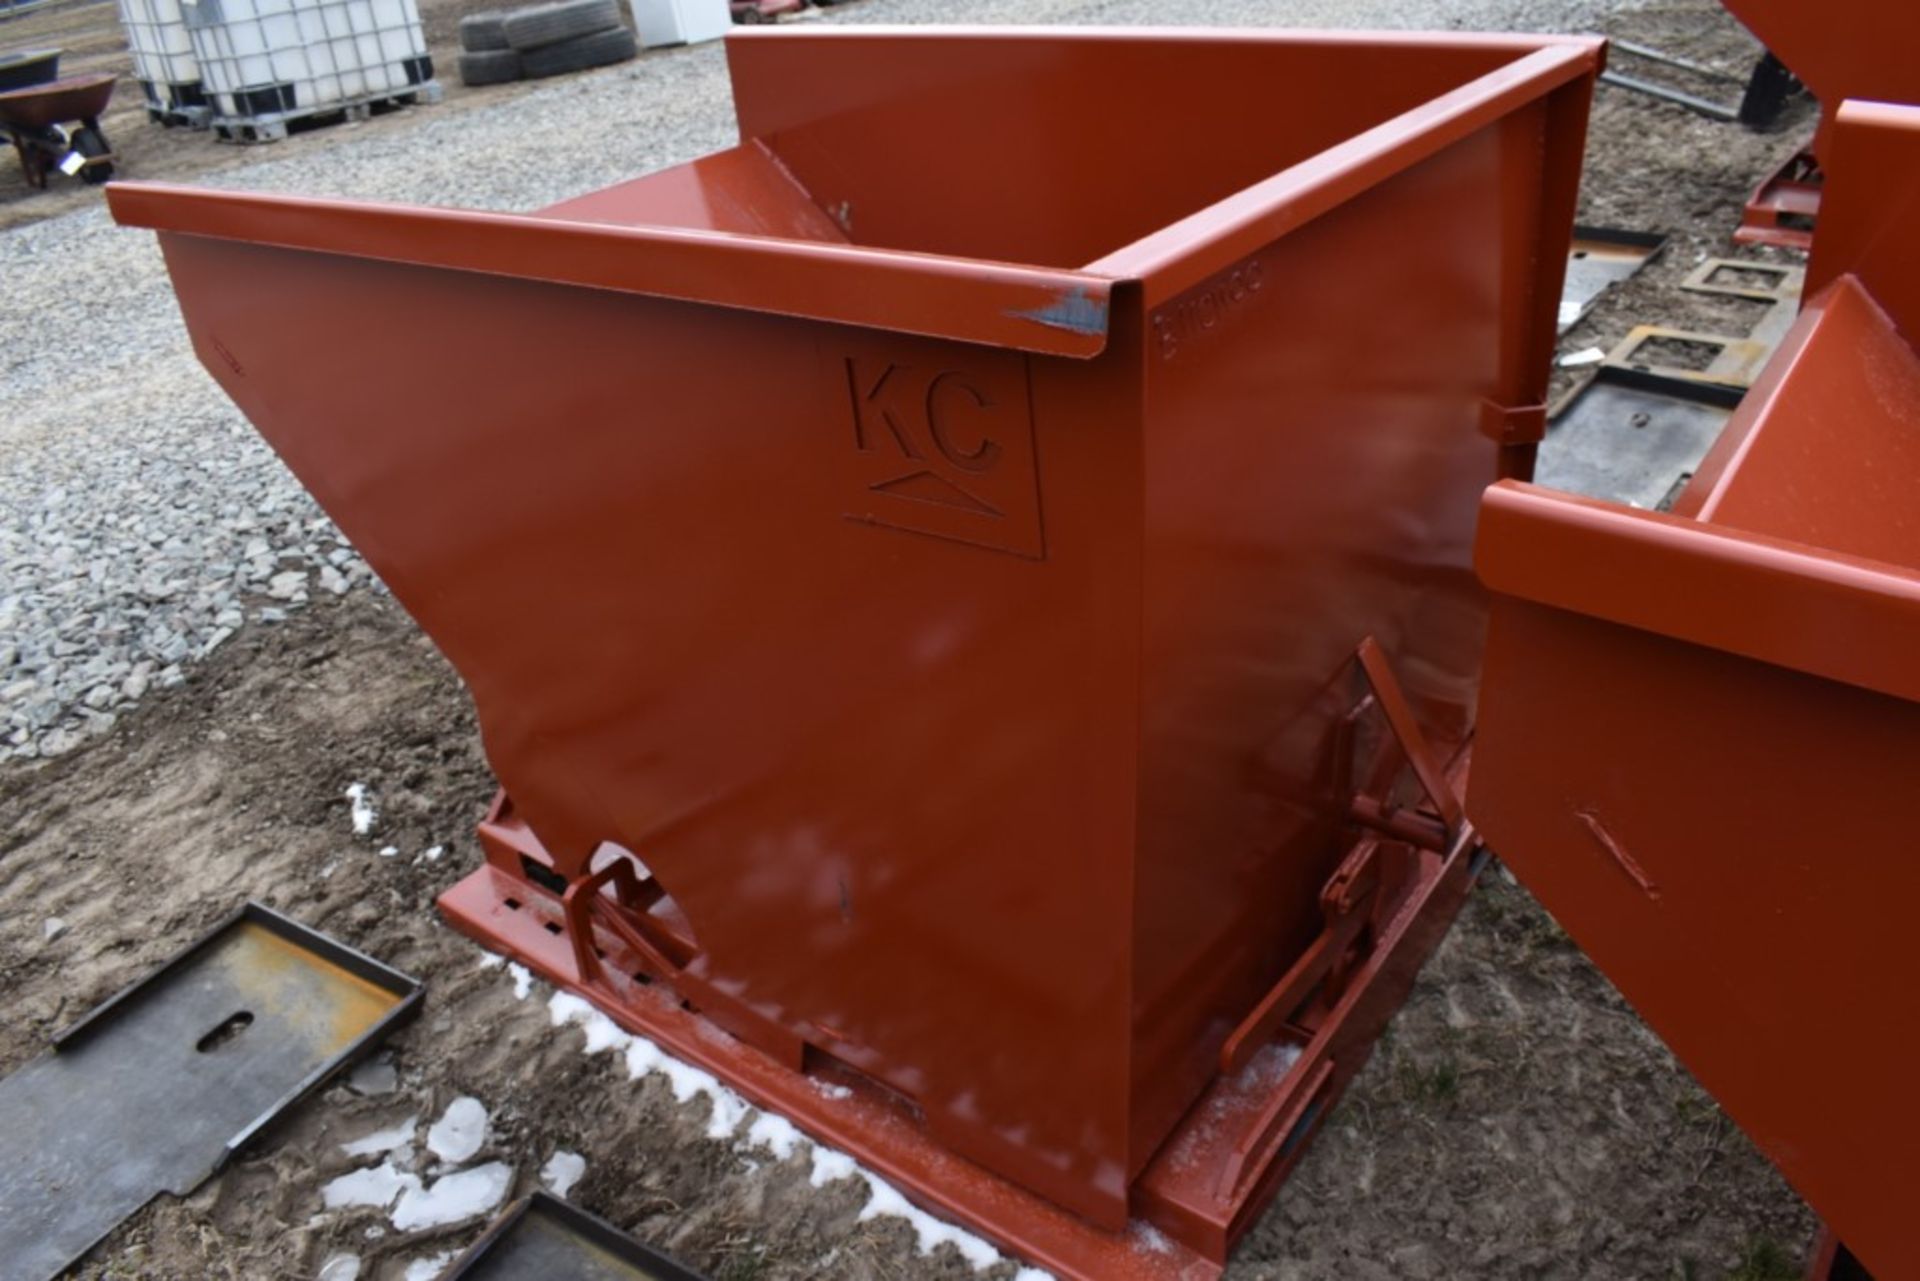 New KC Fork Mounted Self Tipping Dumpster - Bild 5 aus 8